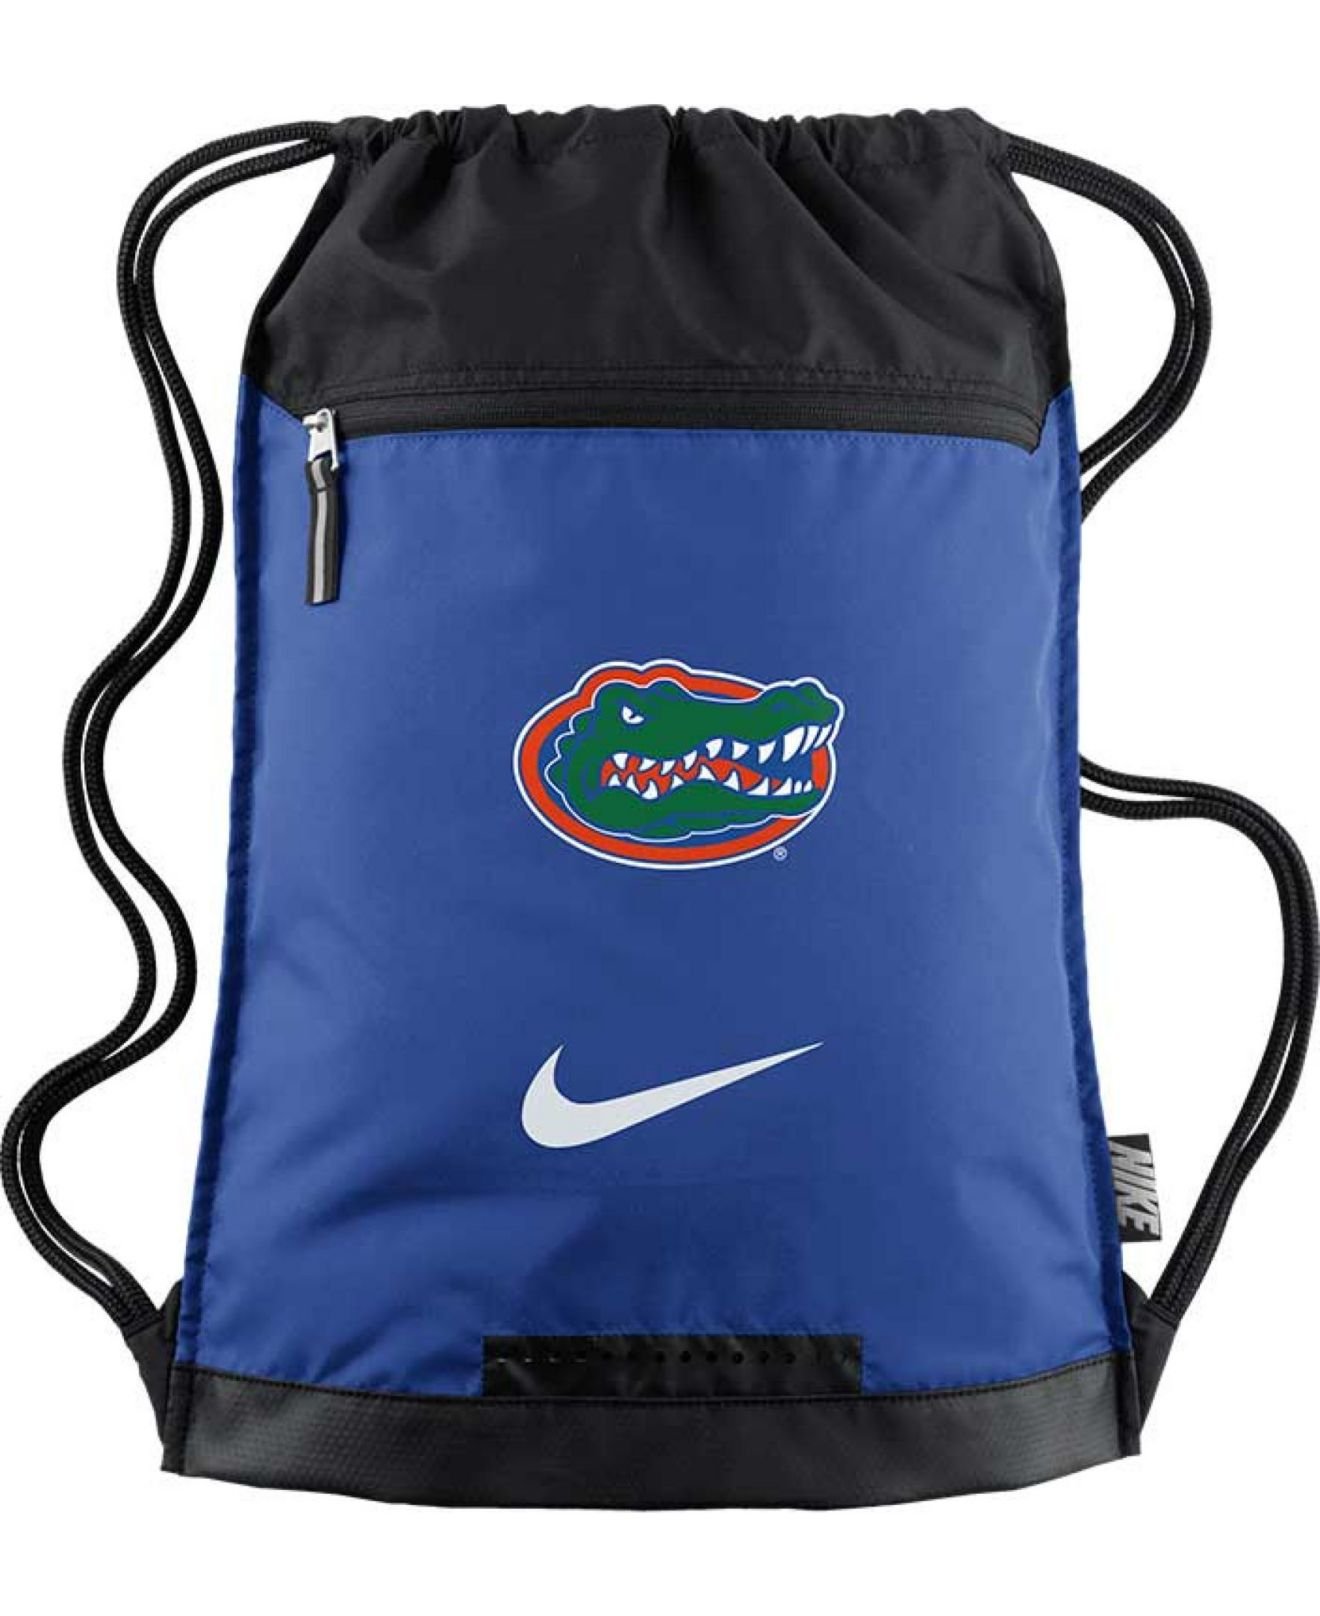 Lyst  Nike Florida Gators Training Gym Bag in Blue